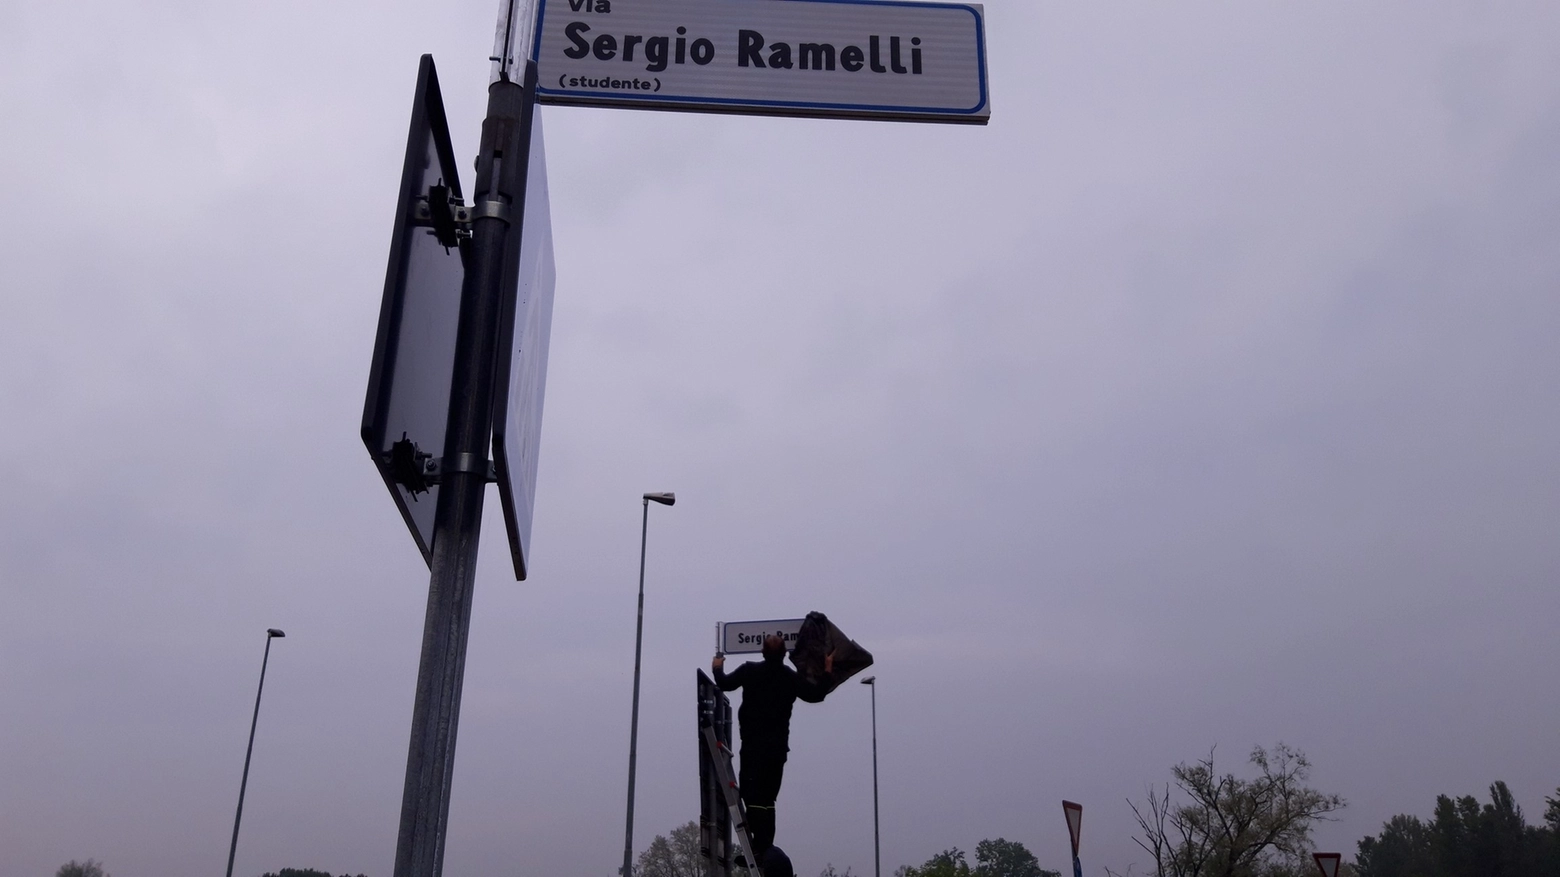 La targa di intitolazione della via a Sergio Ramelli